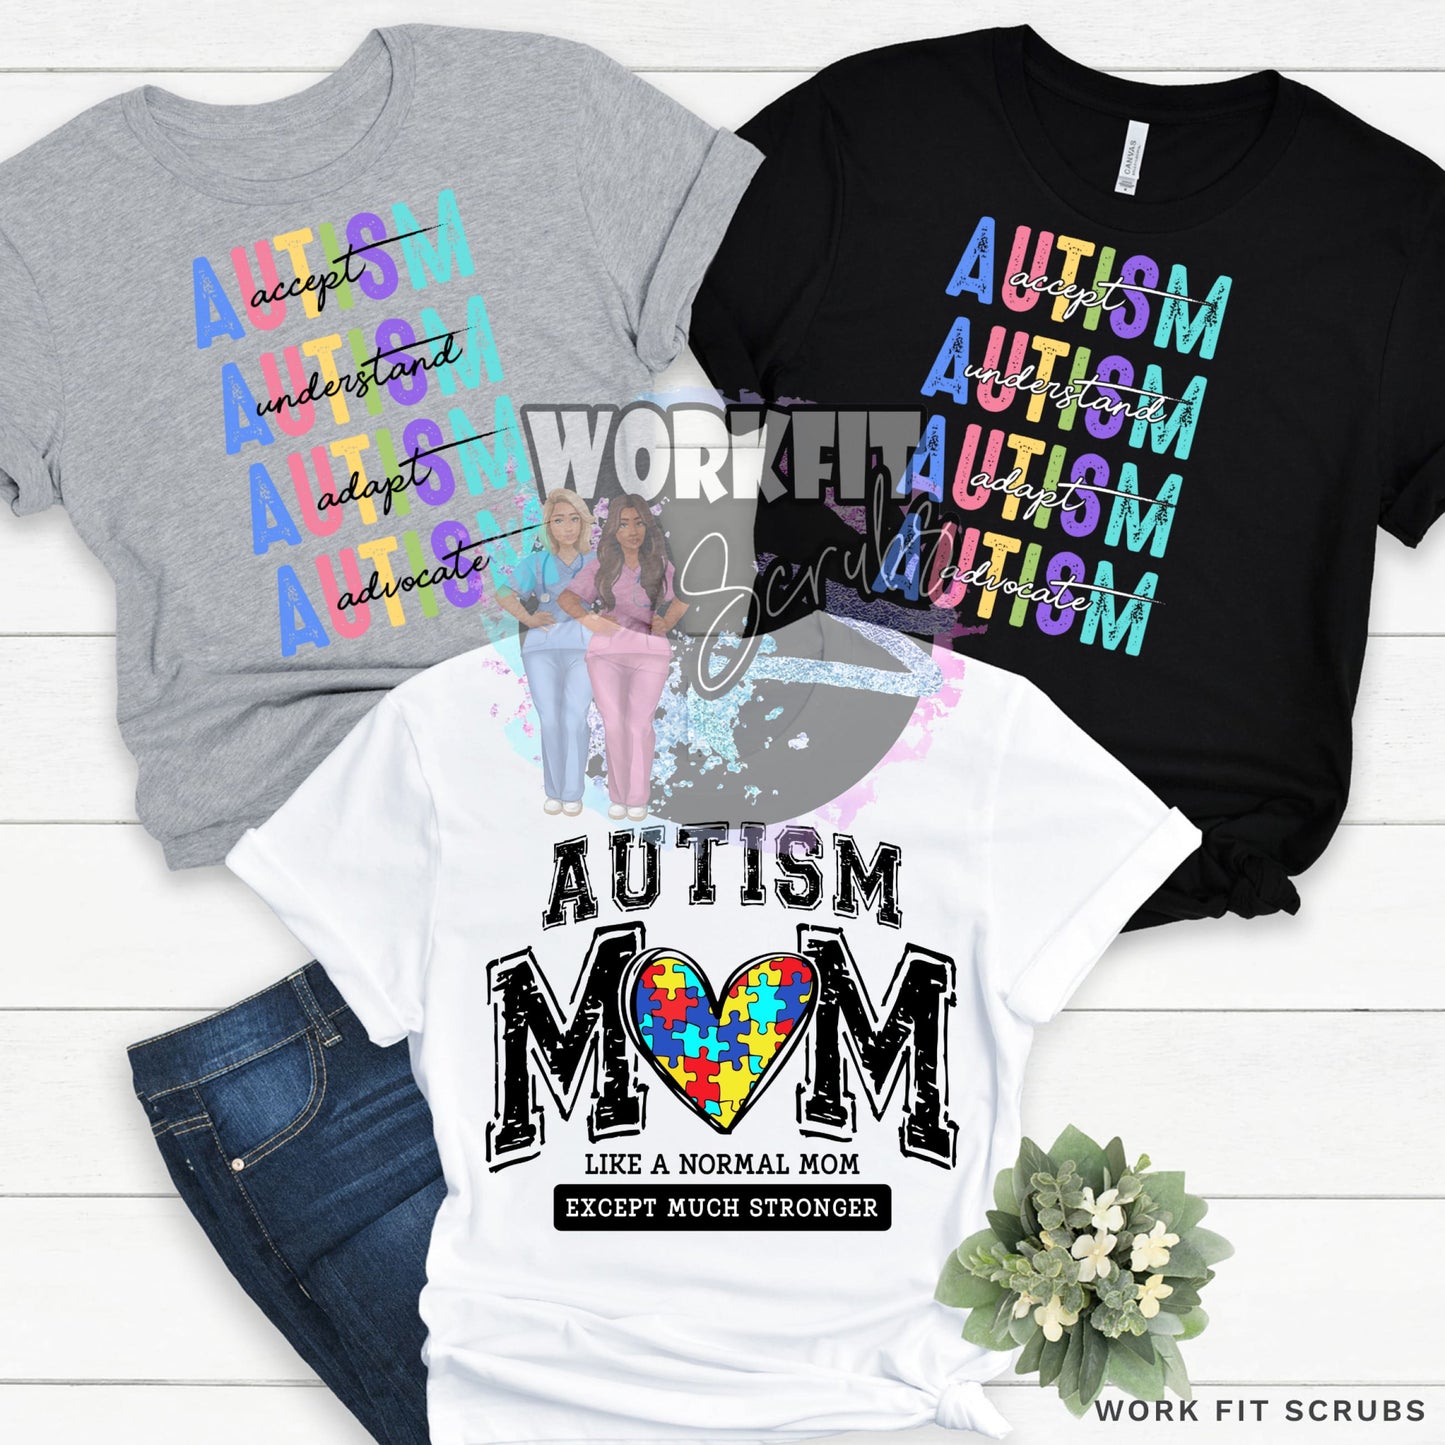 Work Fit Scrubs - Autism Awareness T - Shirts.